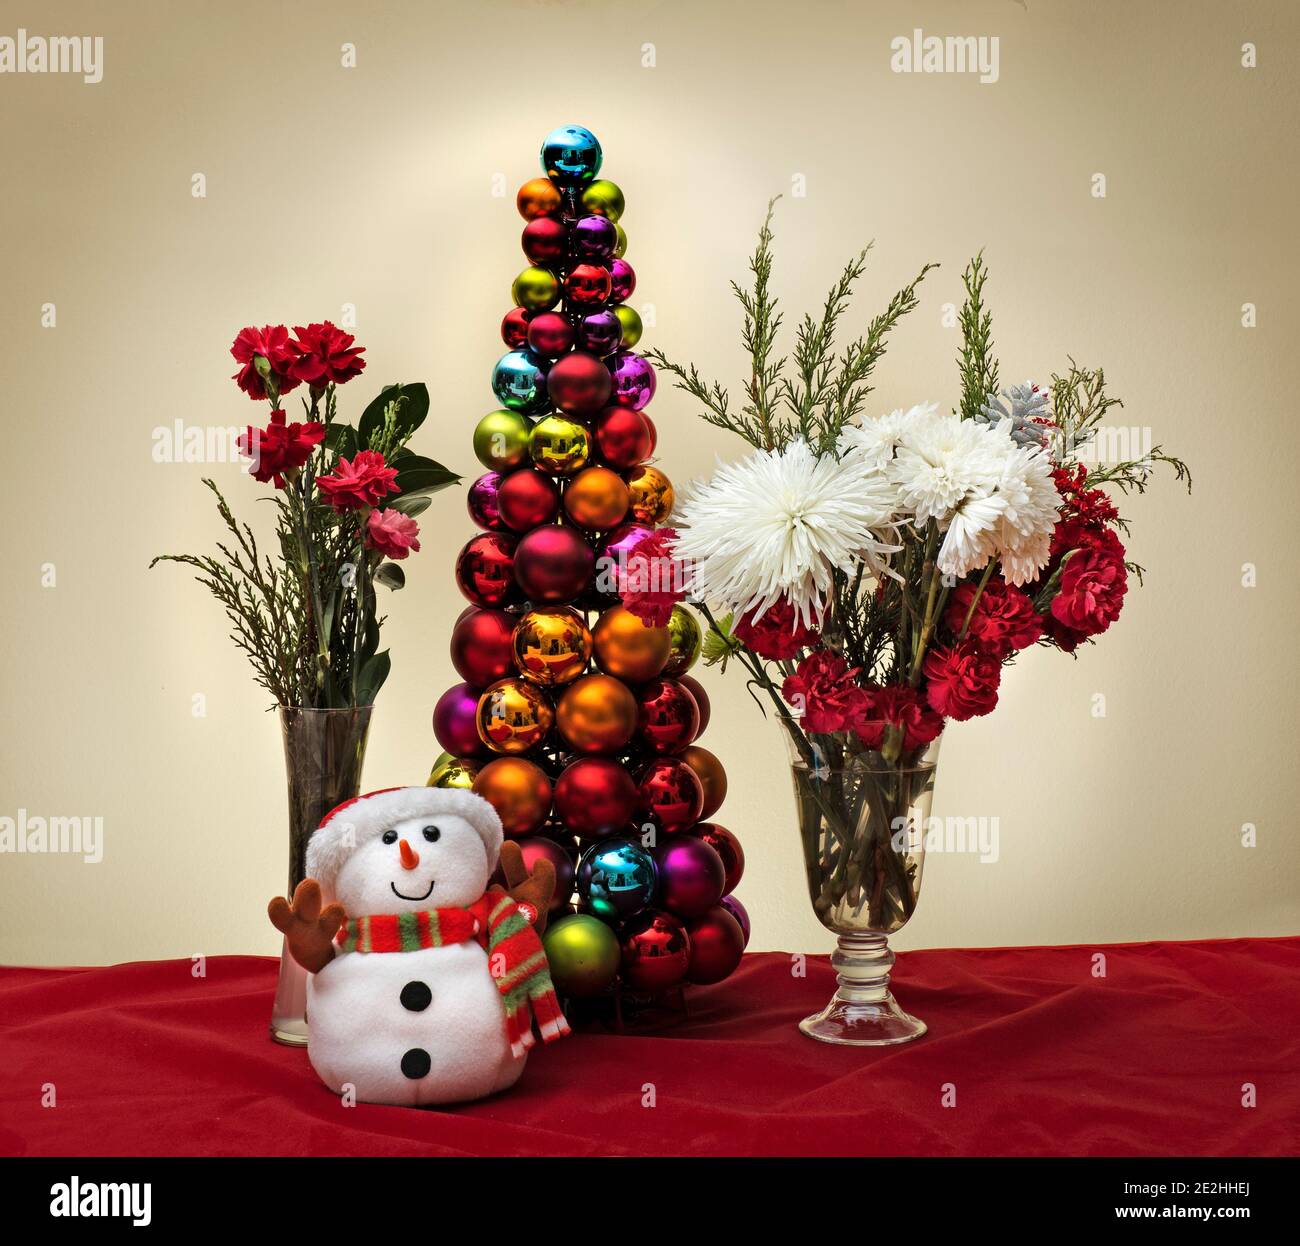 Weihnachtsszene mit Blumen Schneemann und weihnachtsbaum aus Glänzende dekorative Kugeln Ornamente Stockfoto